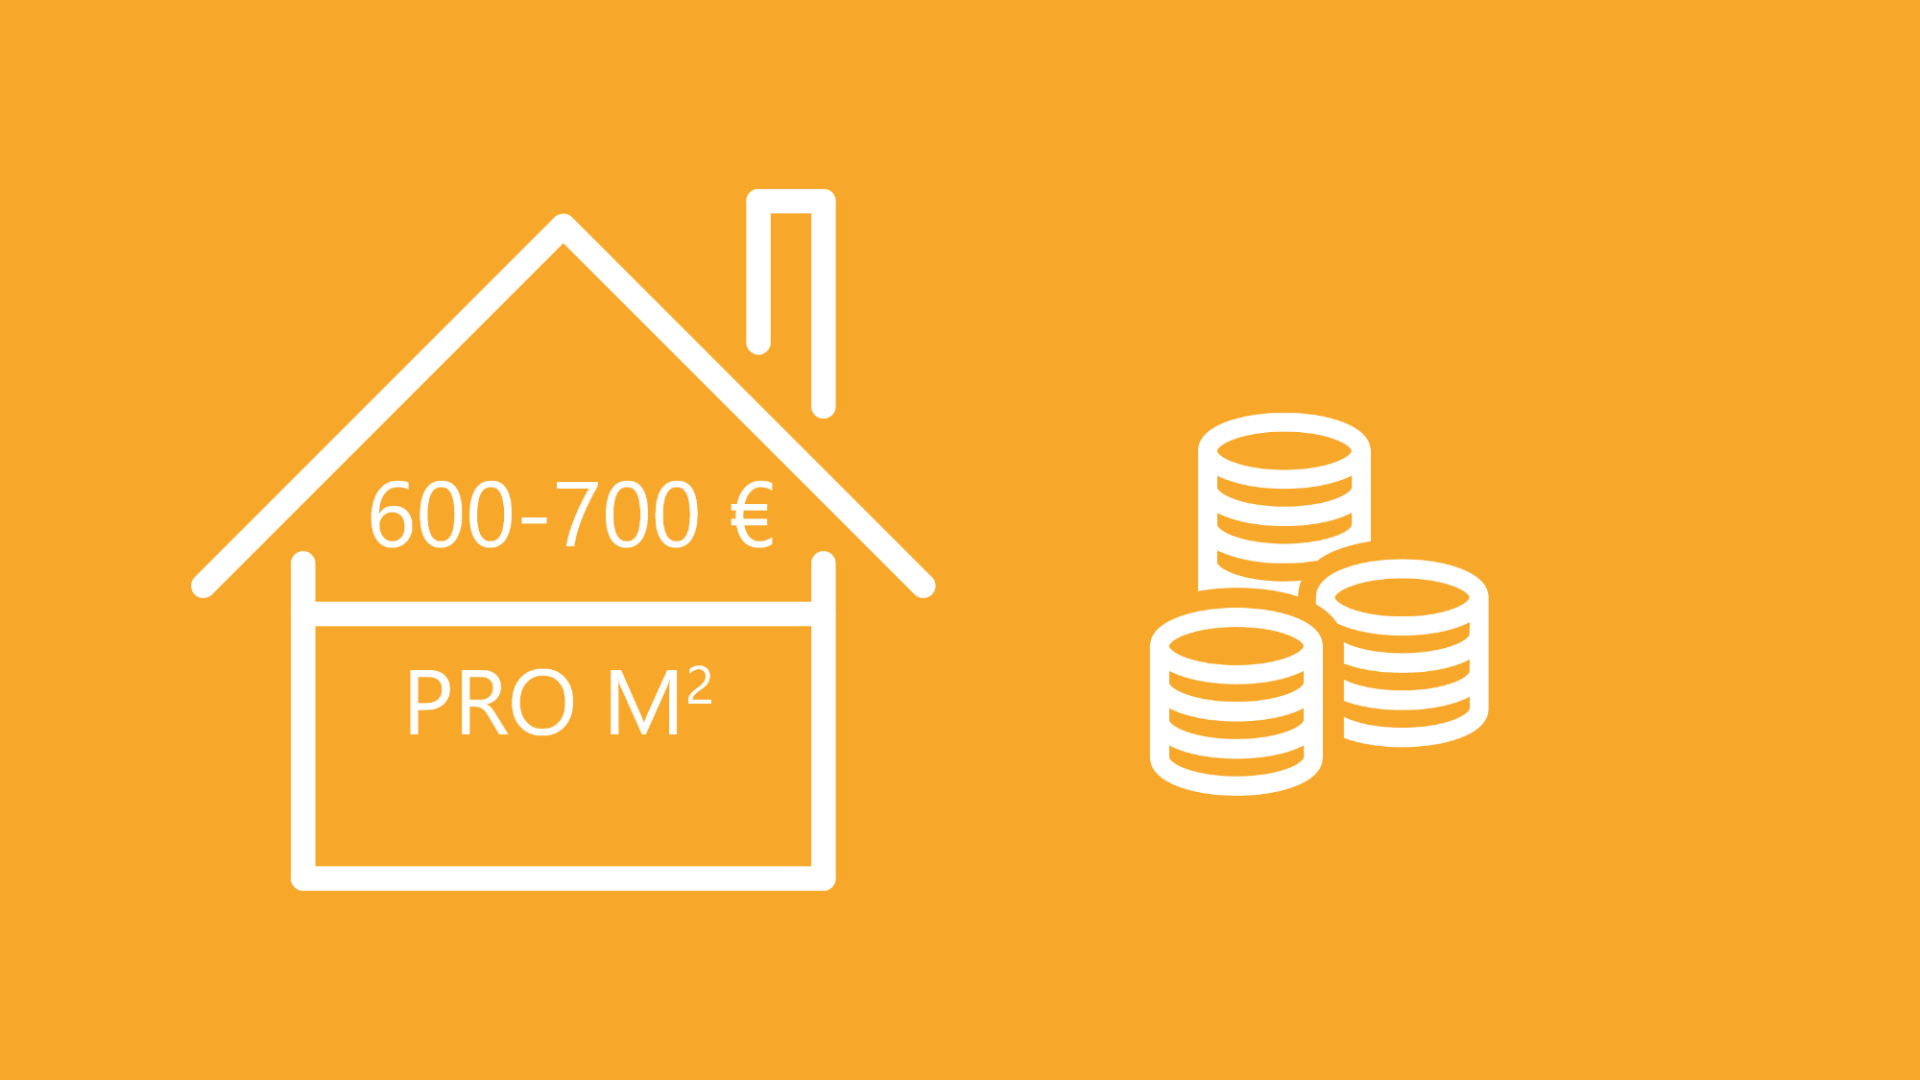 Zu sehen ist eine Grafik, die aussagt, dass bei der Hausratversicherung meist eine Versicherungssumme von 600-700 Euro pro Quadratmeter angenommen wird.